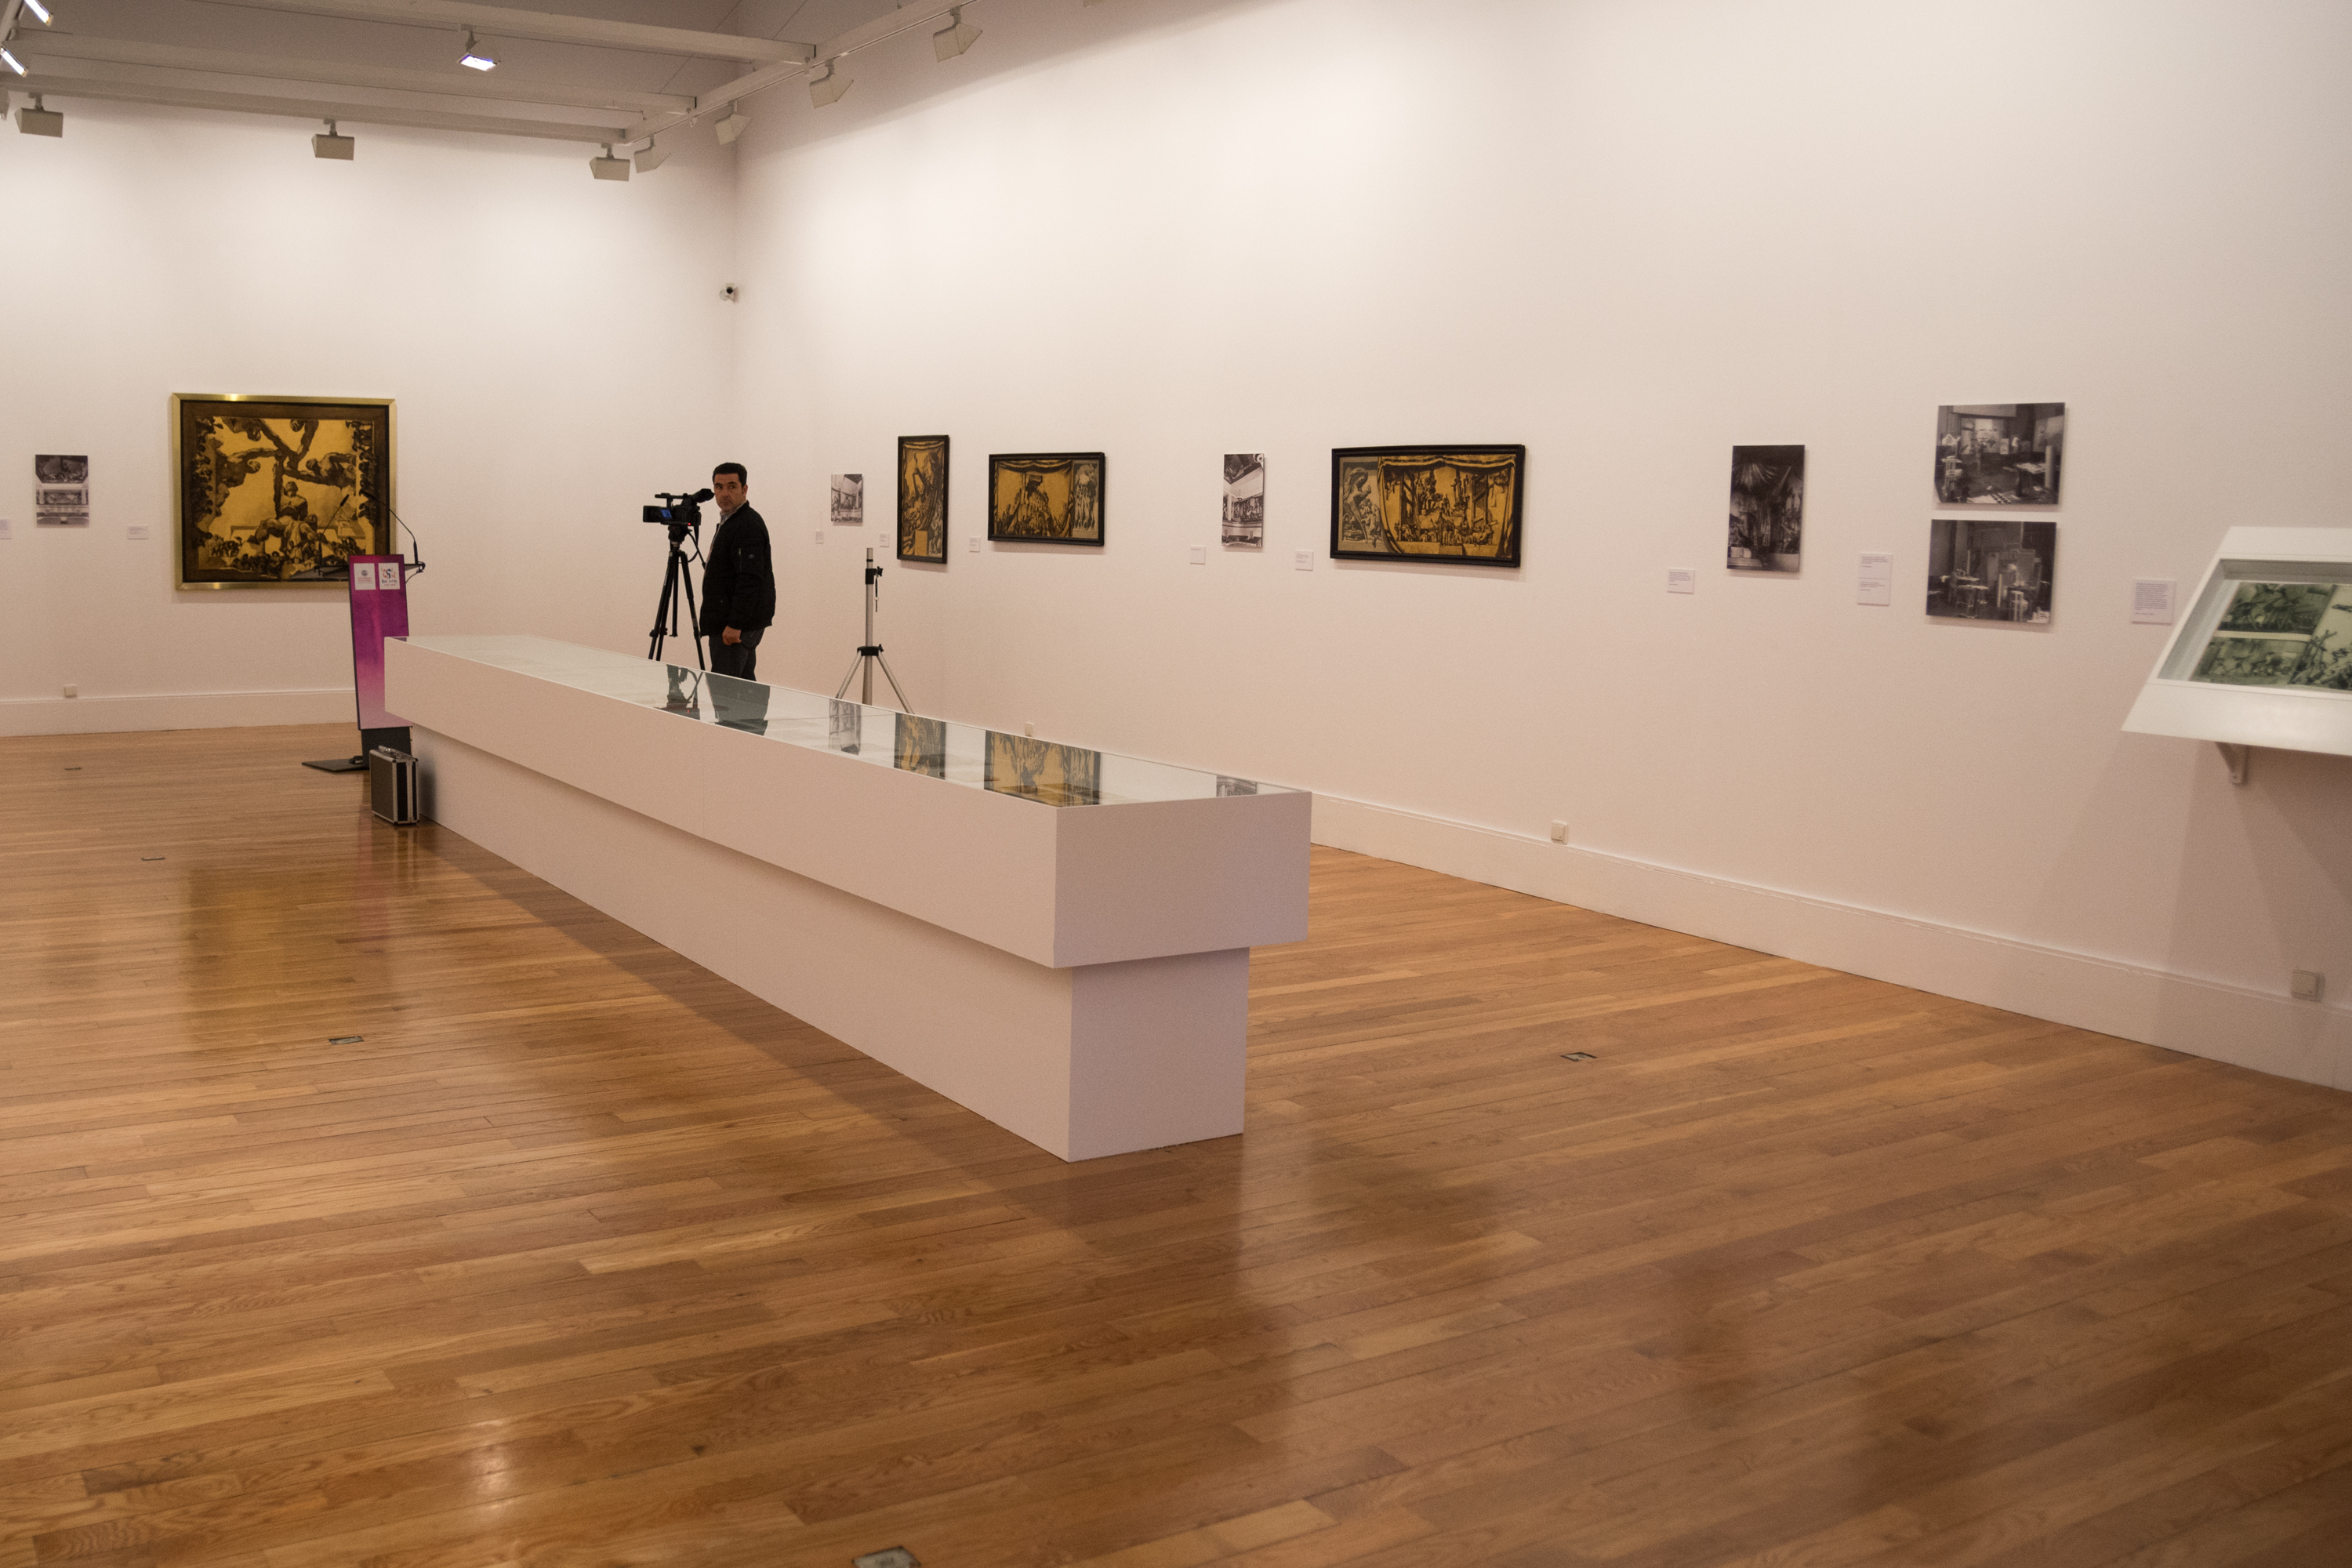  El VIII Centenario y la Capitalidad Cultural San Sebastián 2016 muestran la universalidad de la Escuela de Salamanca a través de una exposición de José María Sert